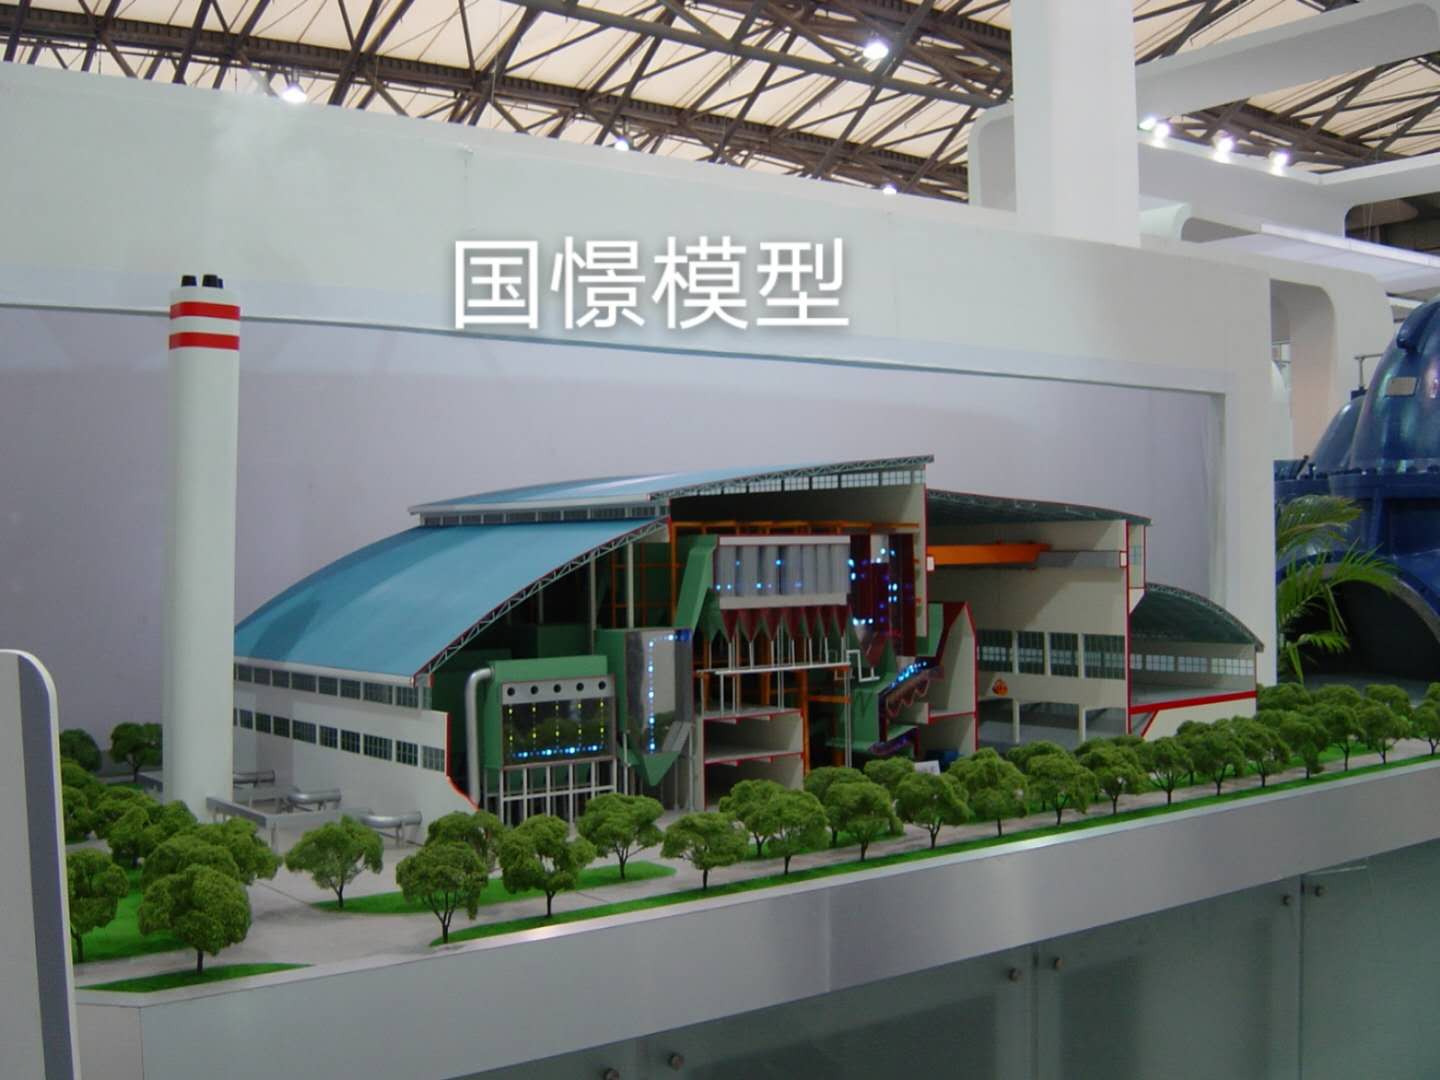 克东县工业模型